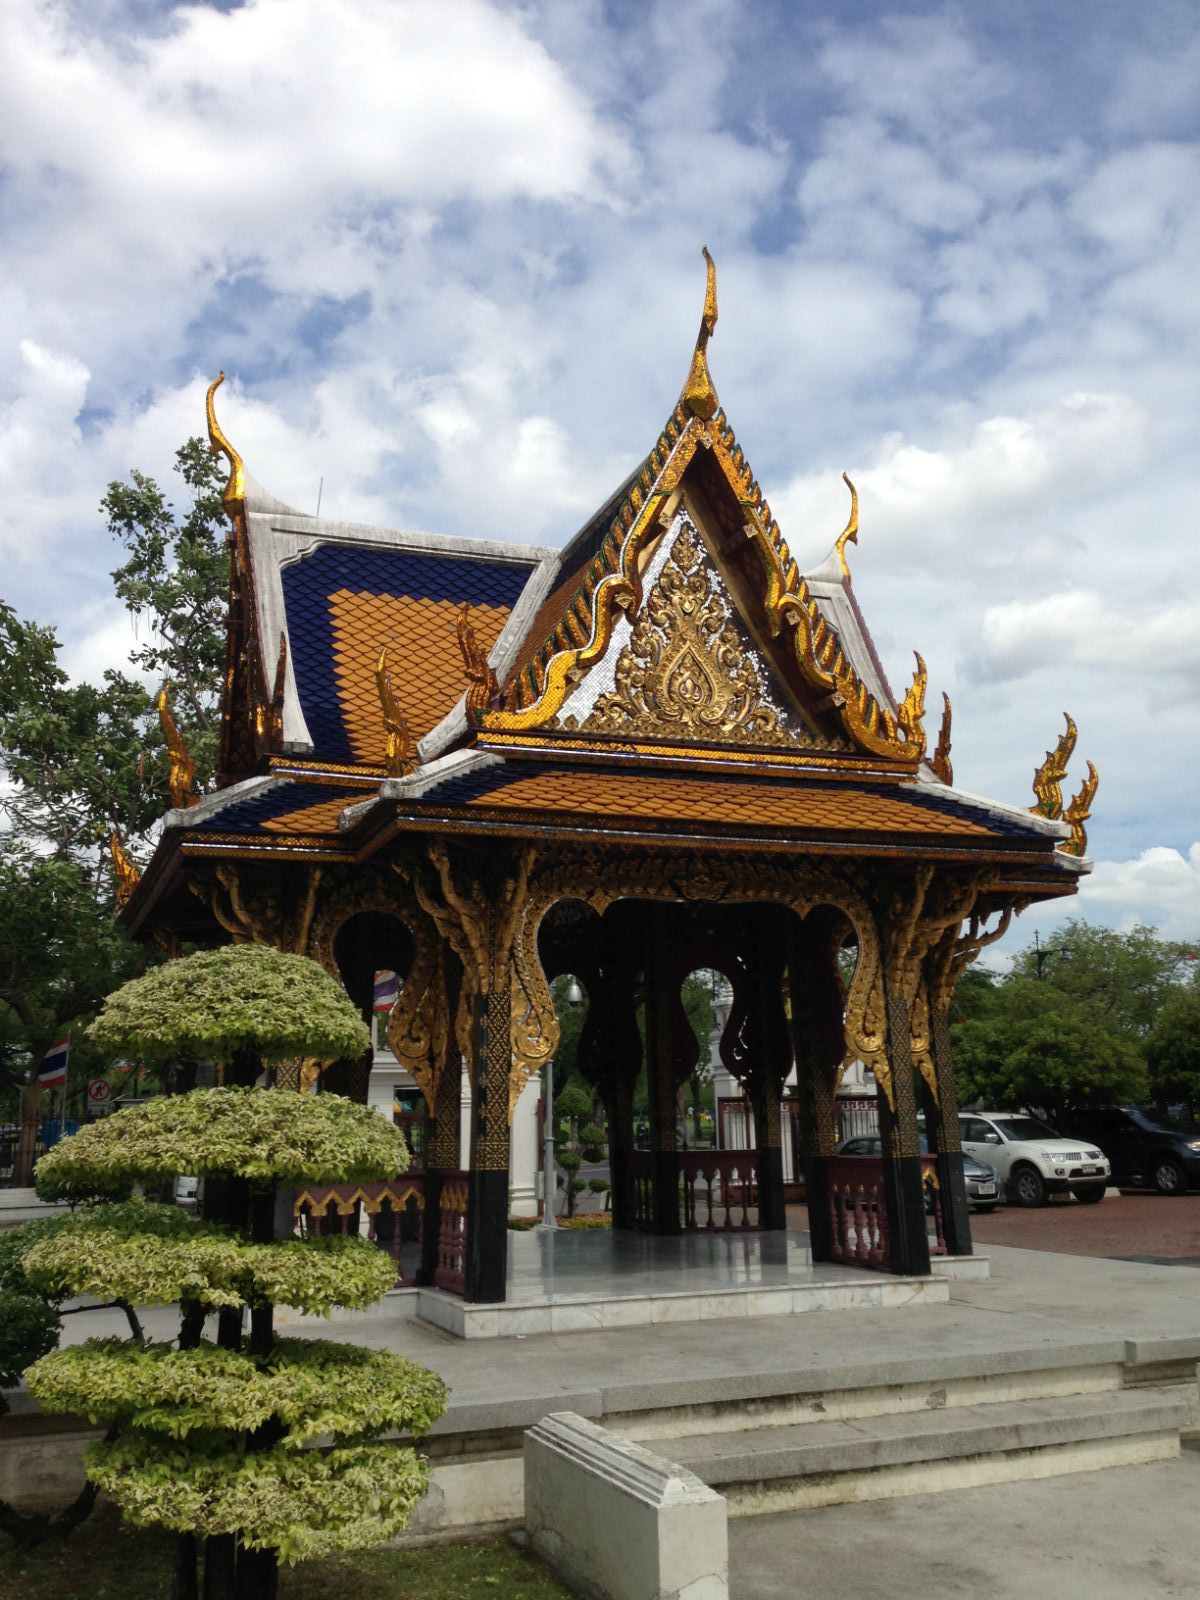 「泰国曼谷旅游景点和项目」✅ 泰国曼谷旅游景点和项目的区别